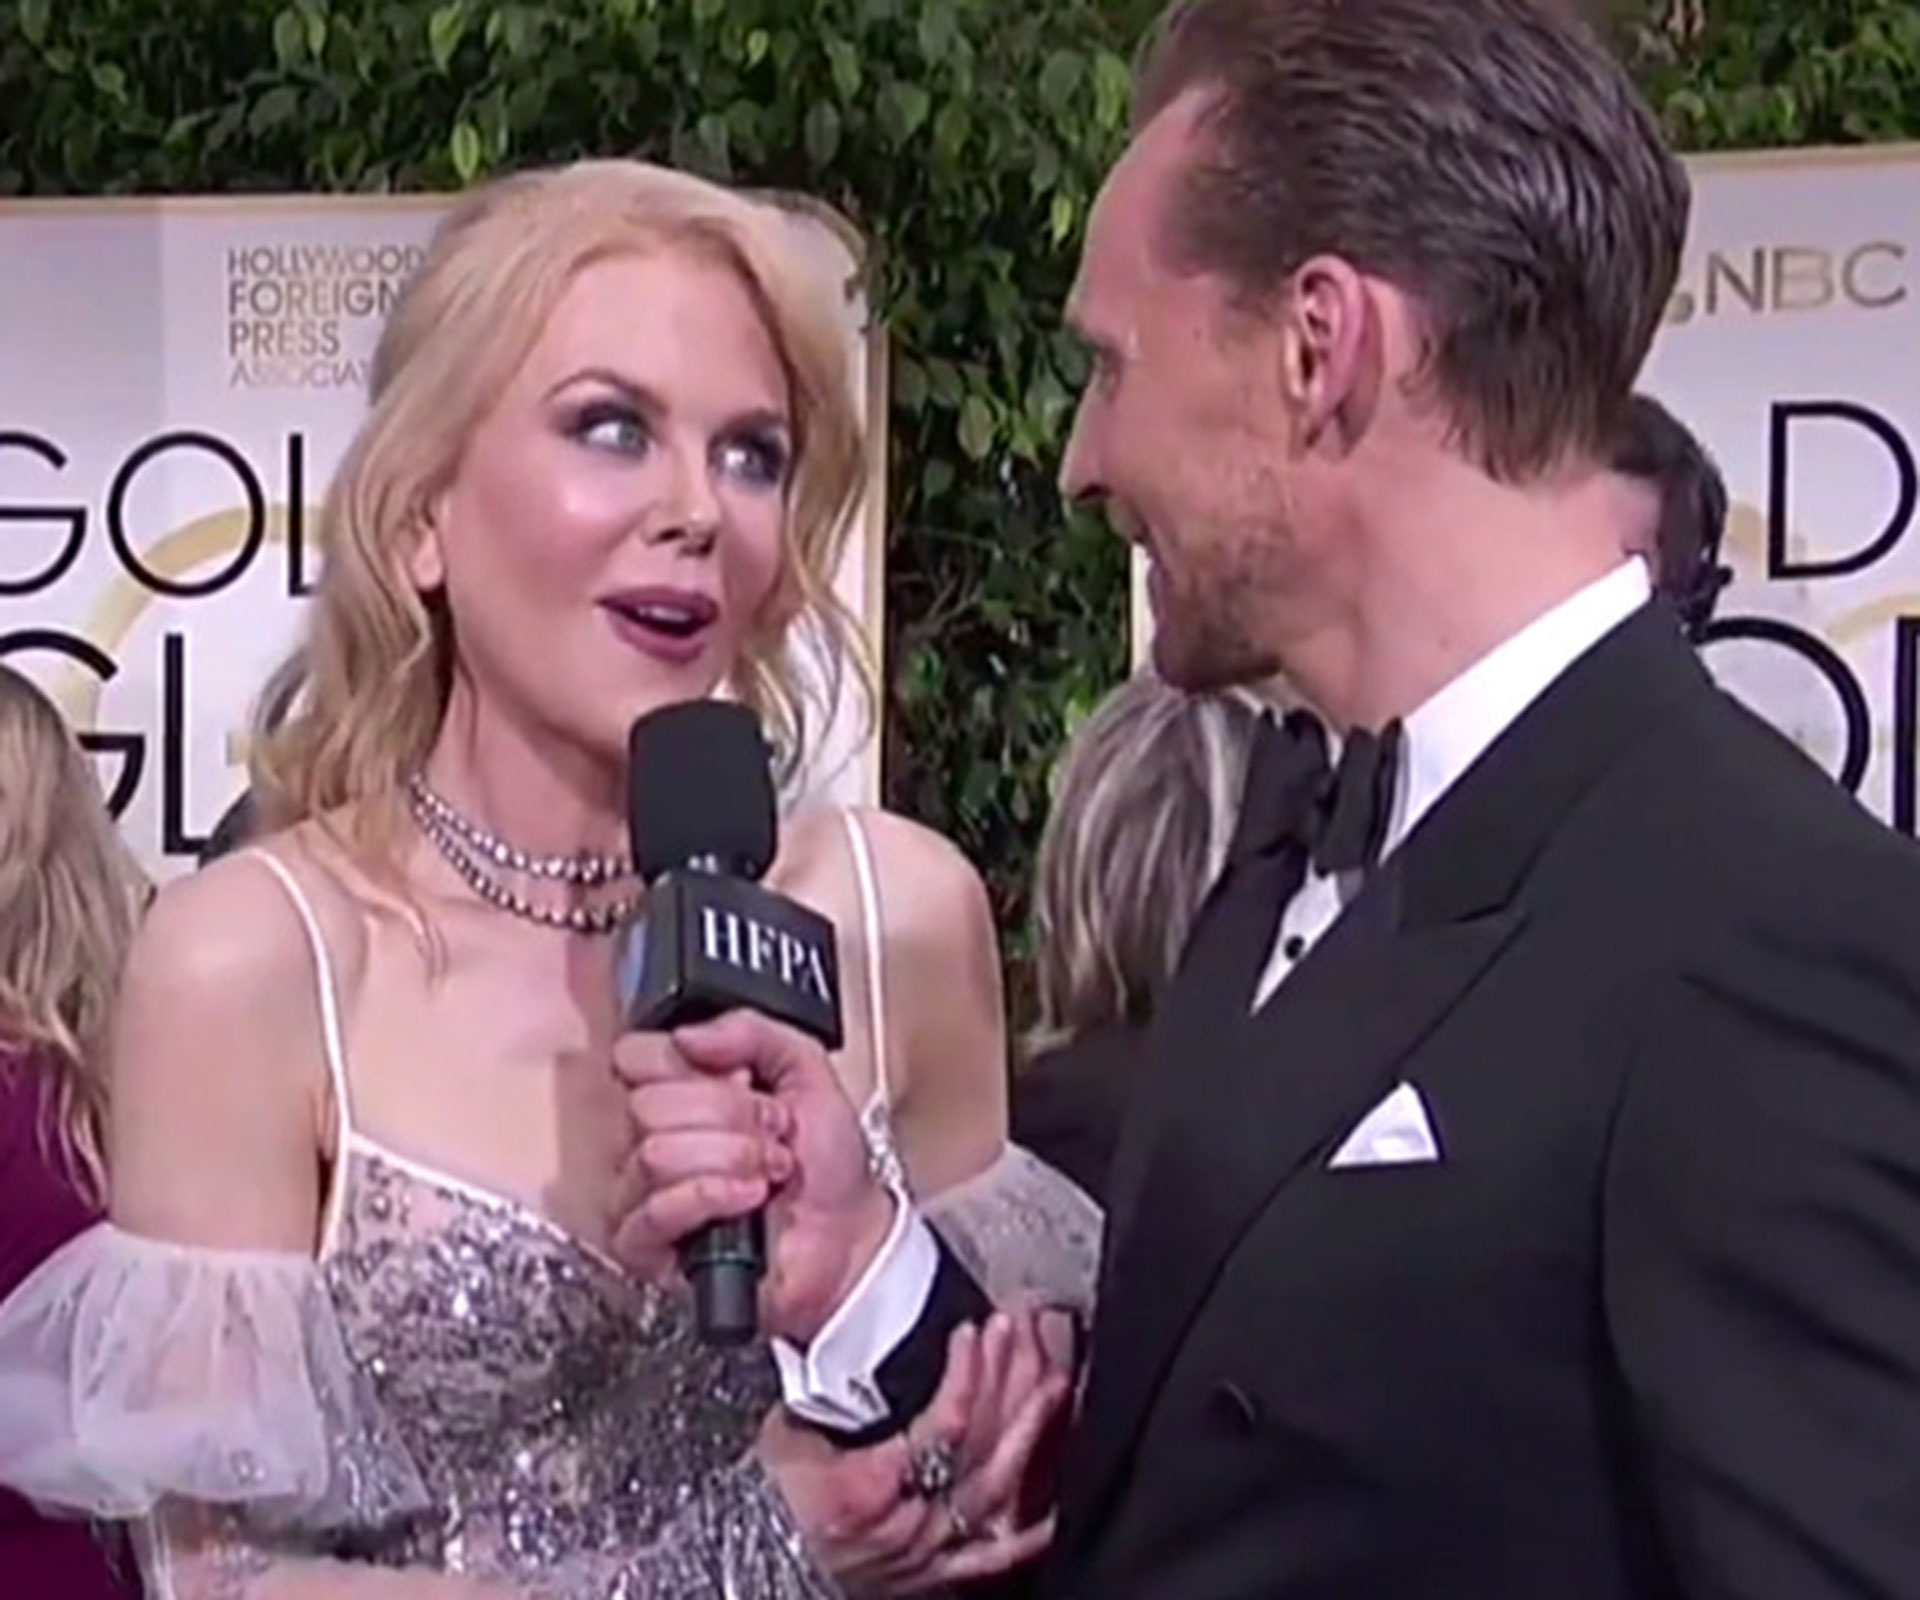 Watch Nicole Kidman hilariously interrupt Tom Hiddleston’s interview on the Golden Globes red carpet